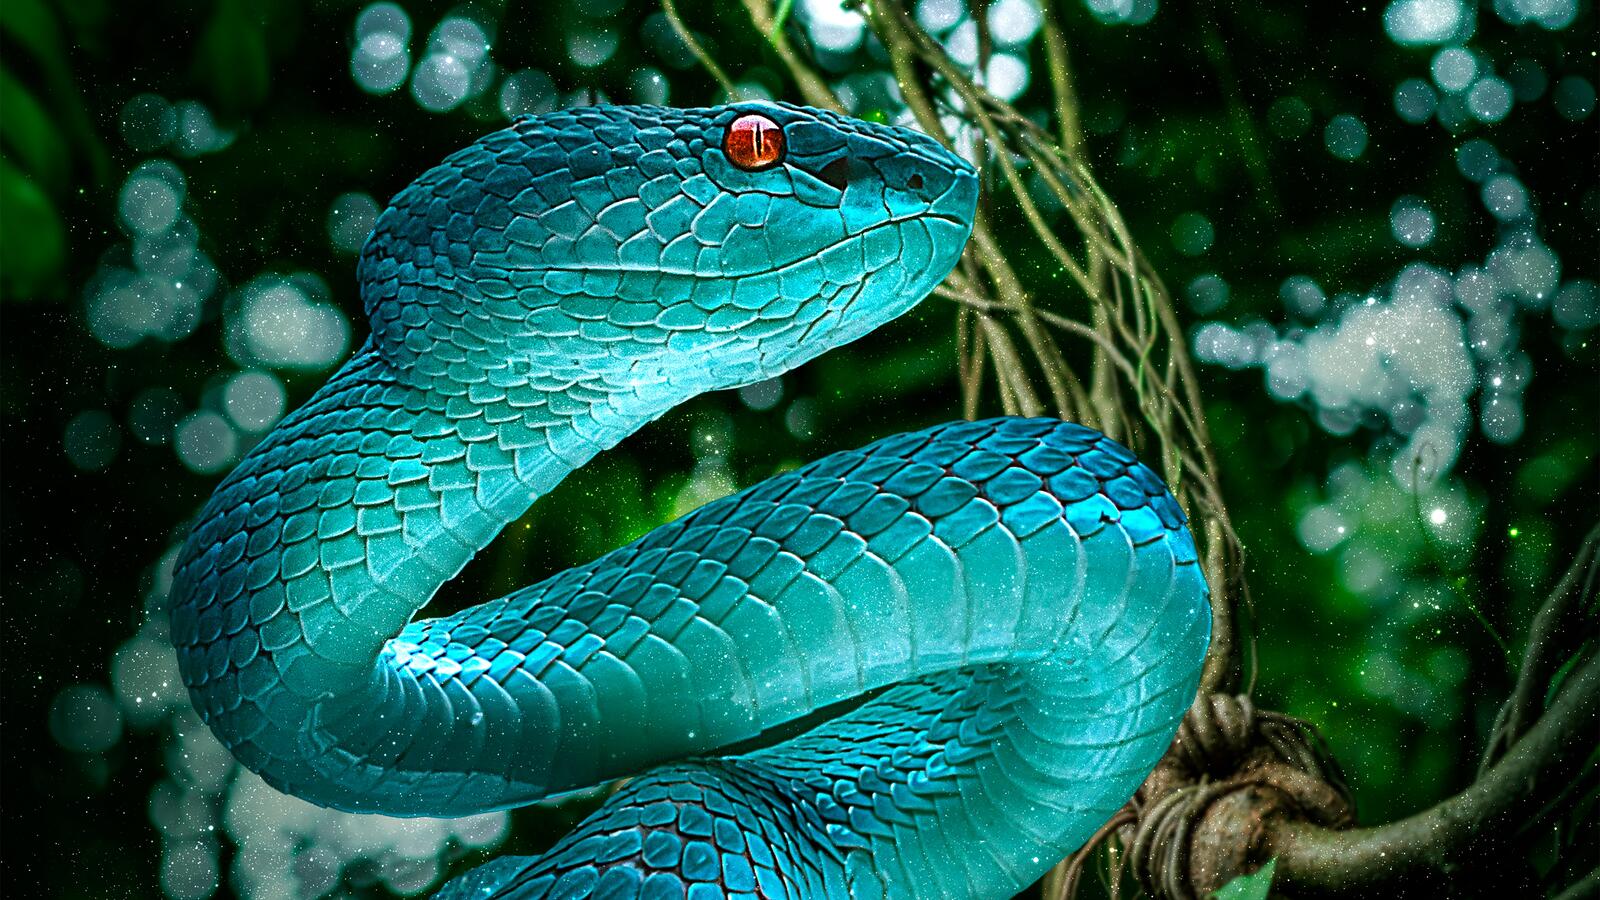 Бесплатное фото Яркая голубая змея с красными глазами